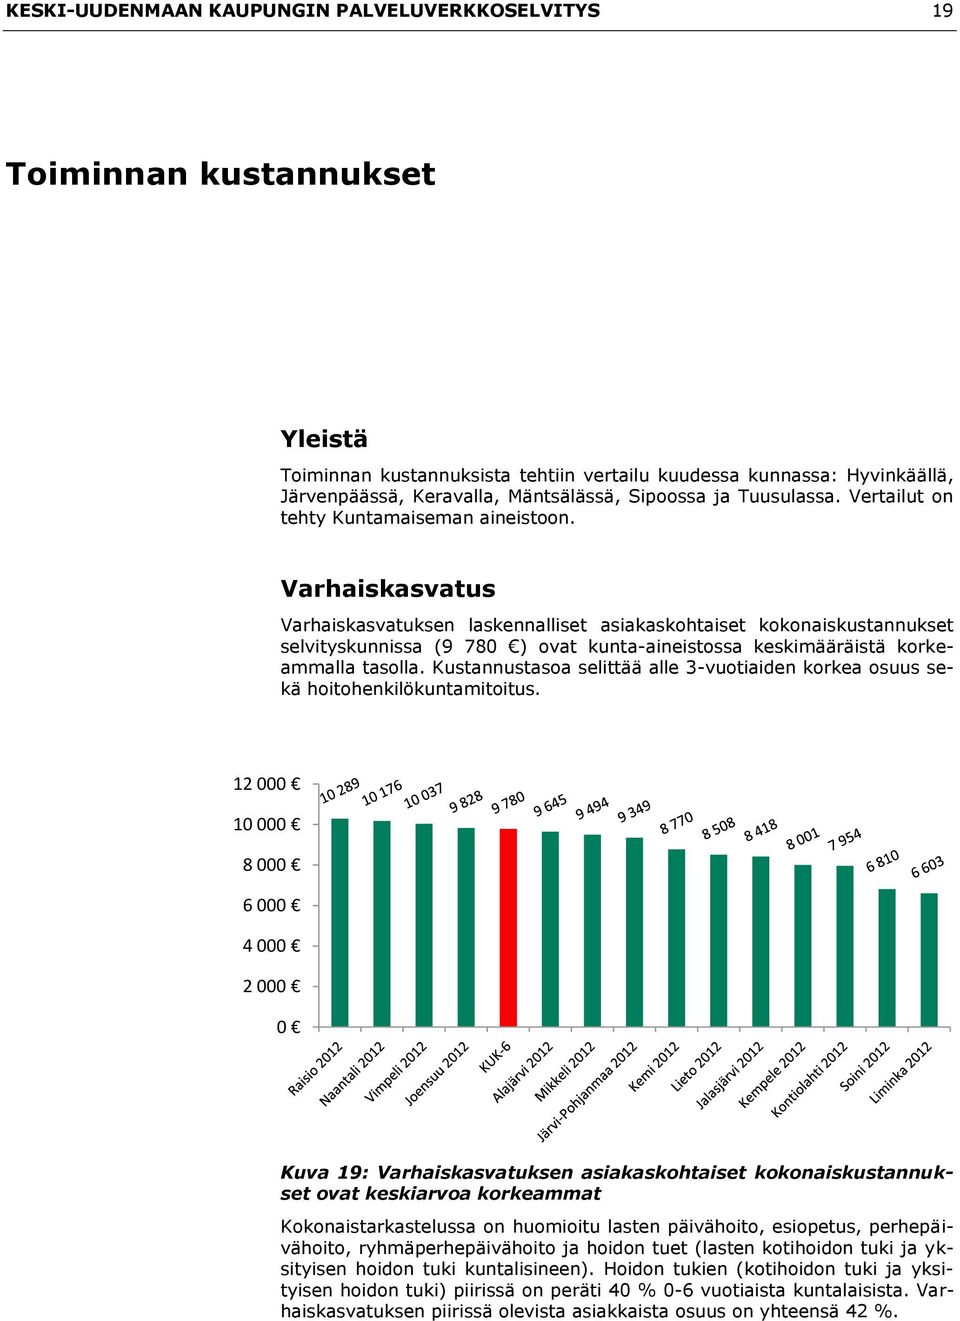 Varhaiskasvatus Varhaiskasvatuksen laskennalliset asiakaskohtaiset kokonaiskustannukset selvityskunnissa (9 780 ) ovat kunta-aineistossa keskimääräistä korkeammalla tasolla.